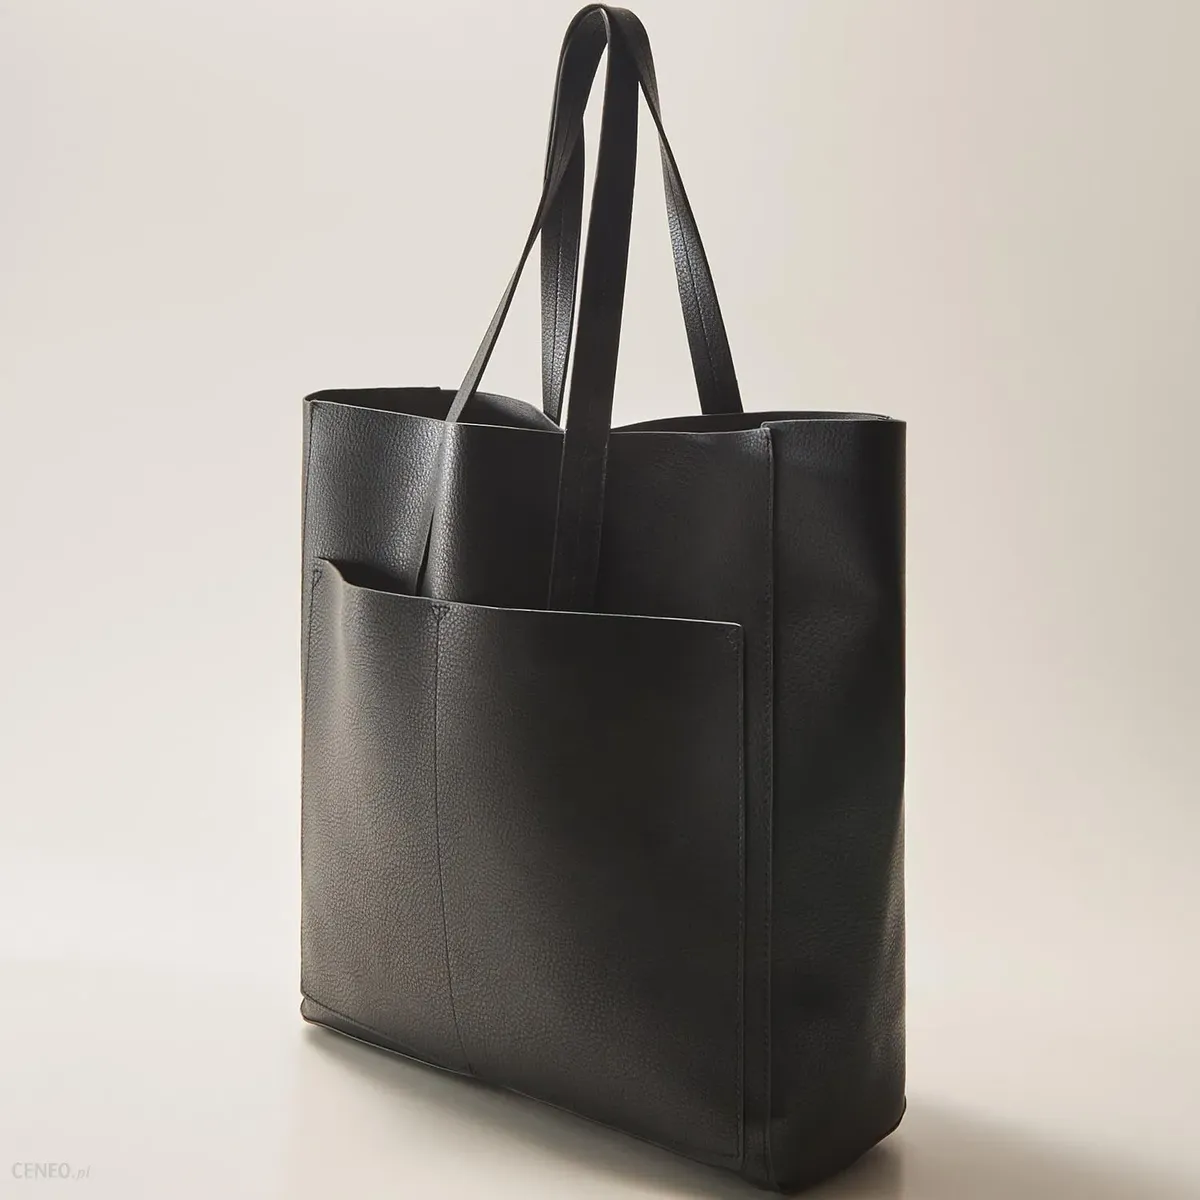 Классическая сумка-шоппер (shopper bag)